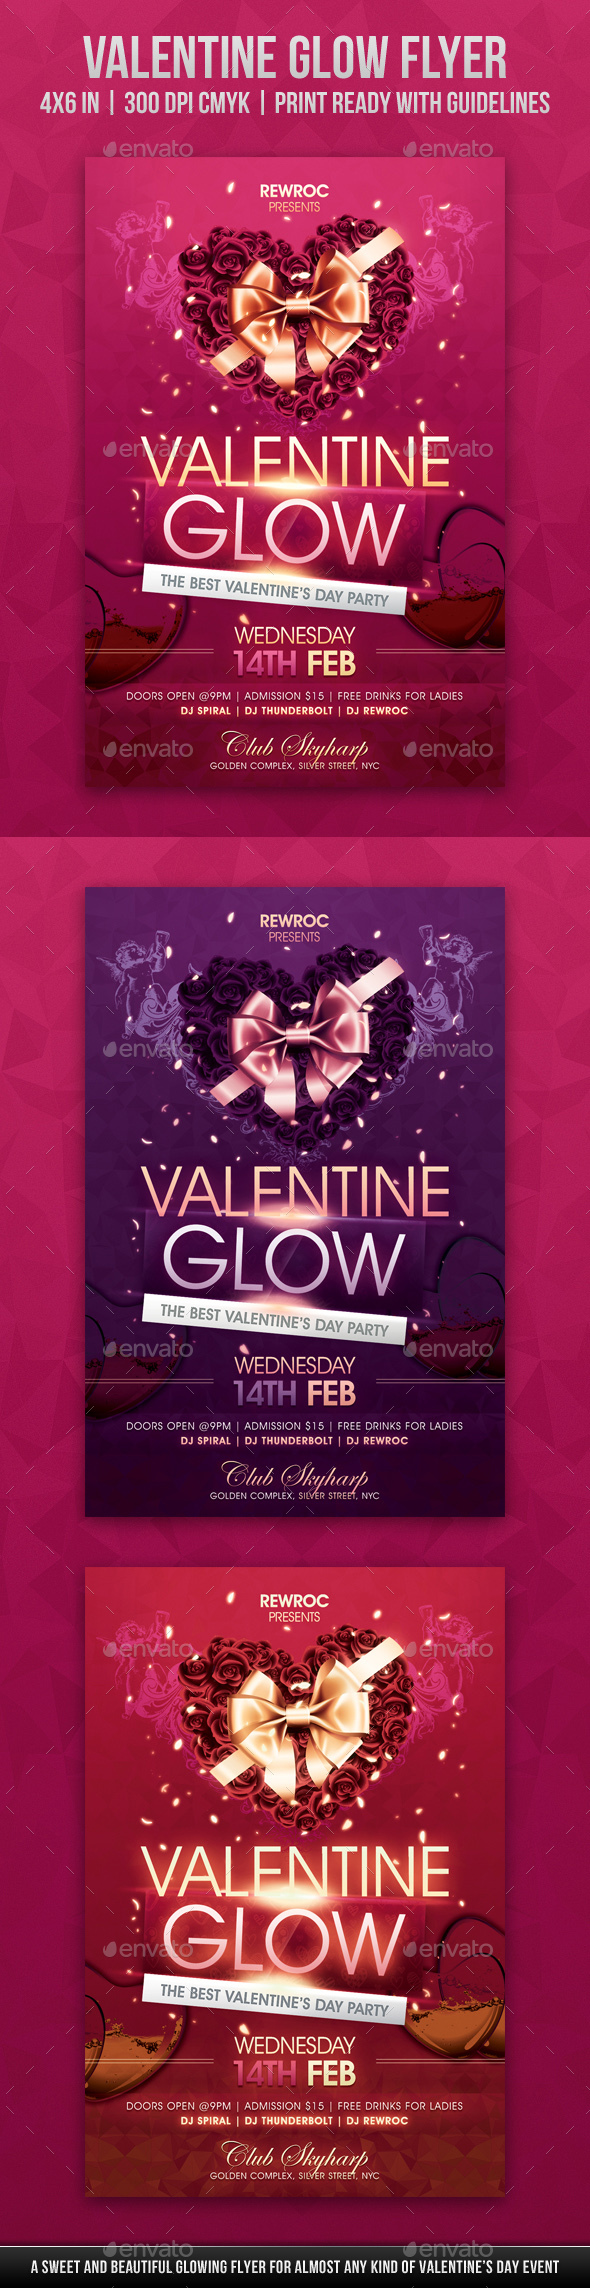 Valentine Glow Flyer